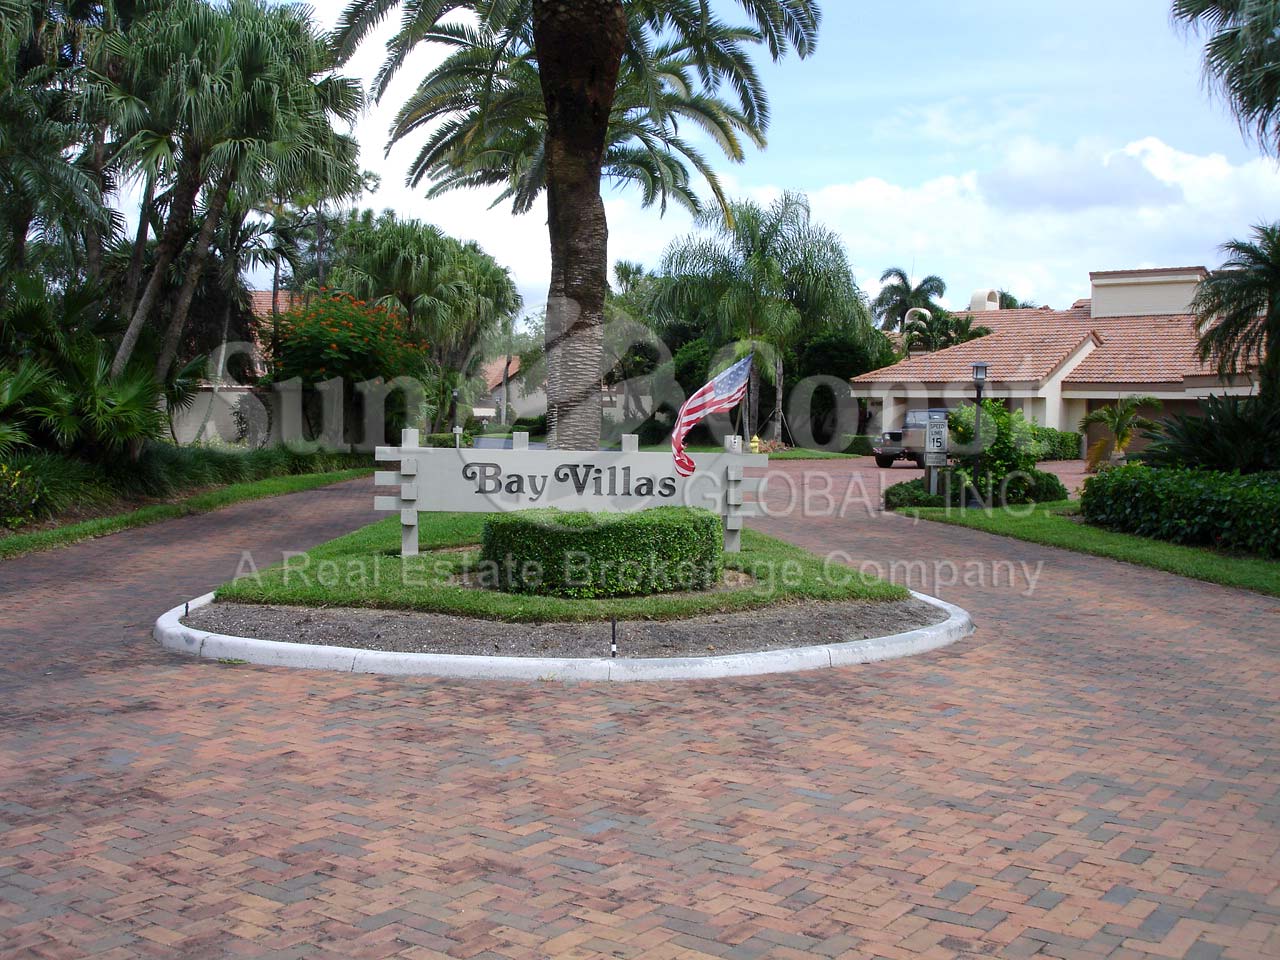 Bay Villas Entrance